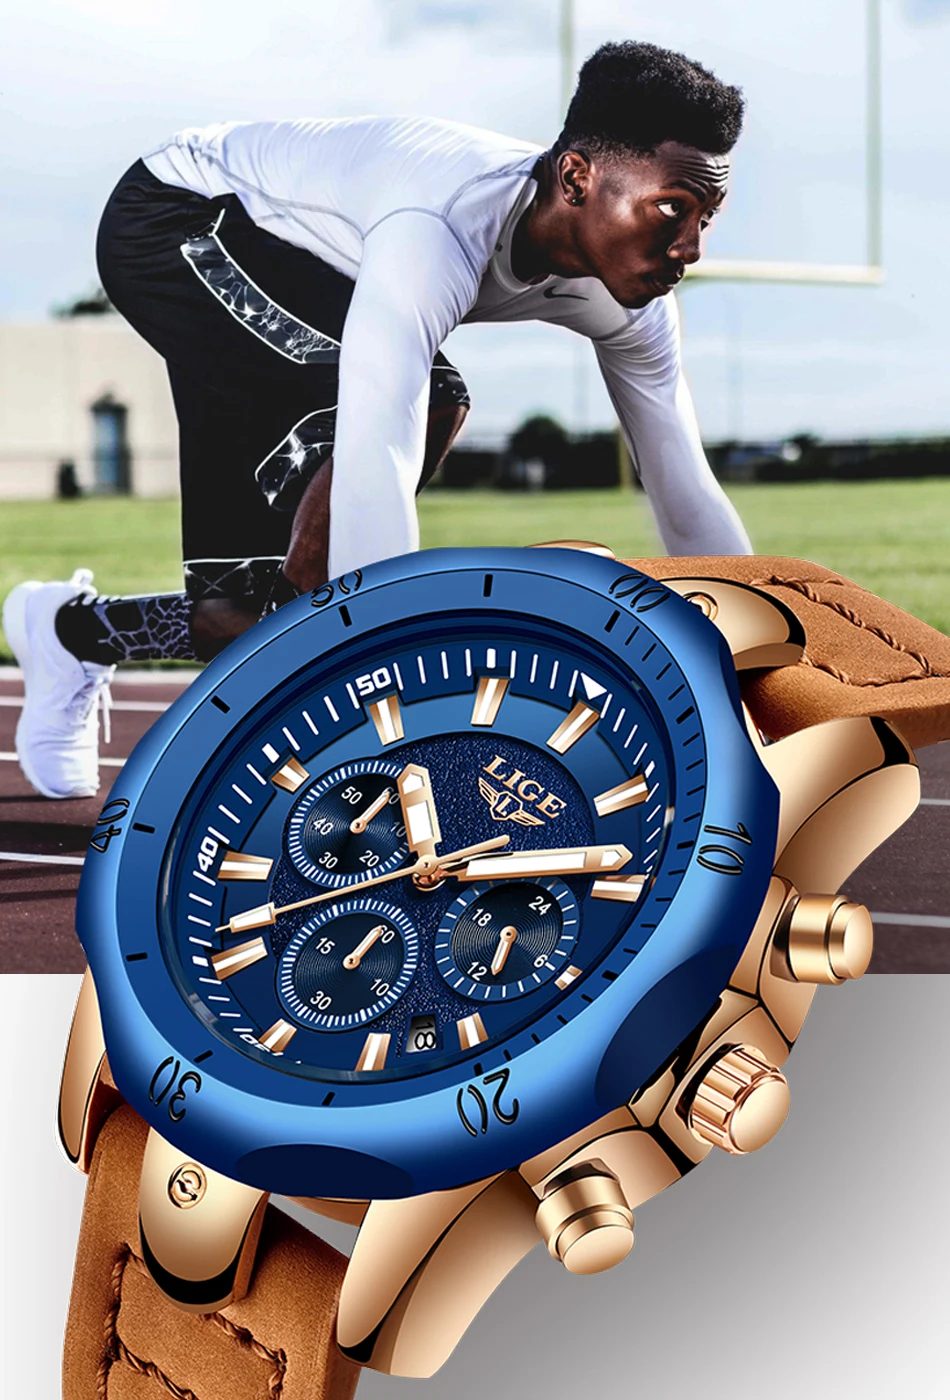 Erkek Kol Saati LIGE часы мужские модные спортивные кварцевые мужские s часы лучший бренд класса люкс военные водонепроницаемые часы Relogio Masculino